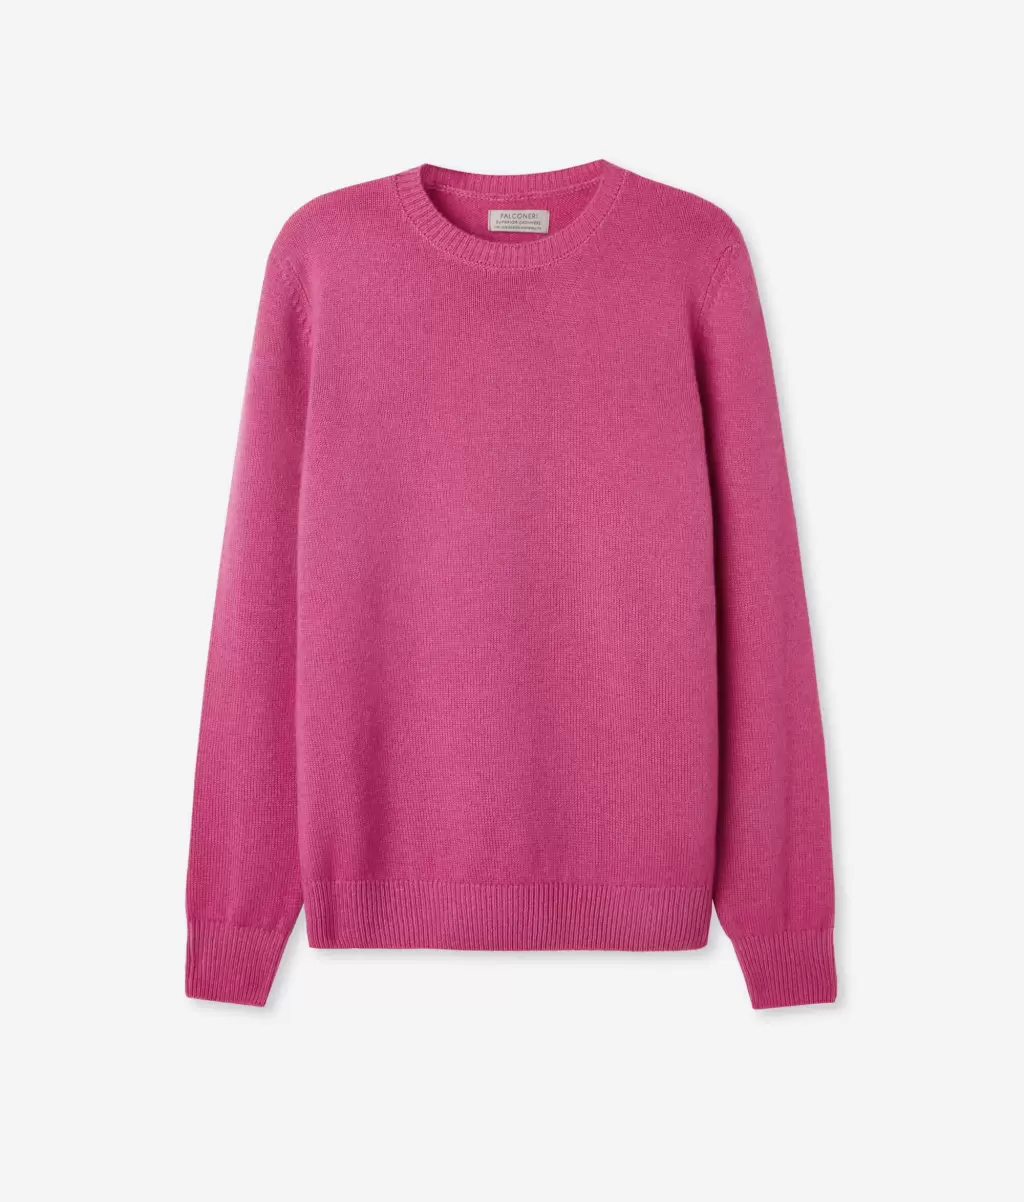 Pink Falconeri Swetry Z Okrągłym Dekoltem Pulower Z Kaszmiru Ultrasoft Kobieta - 4